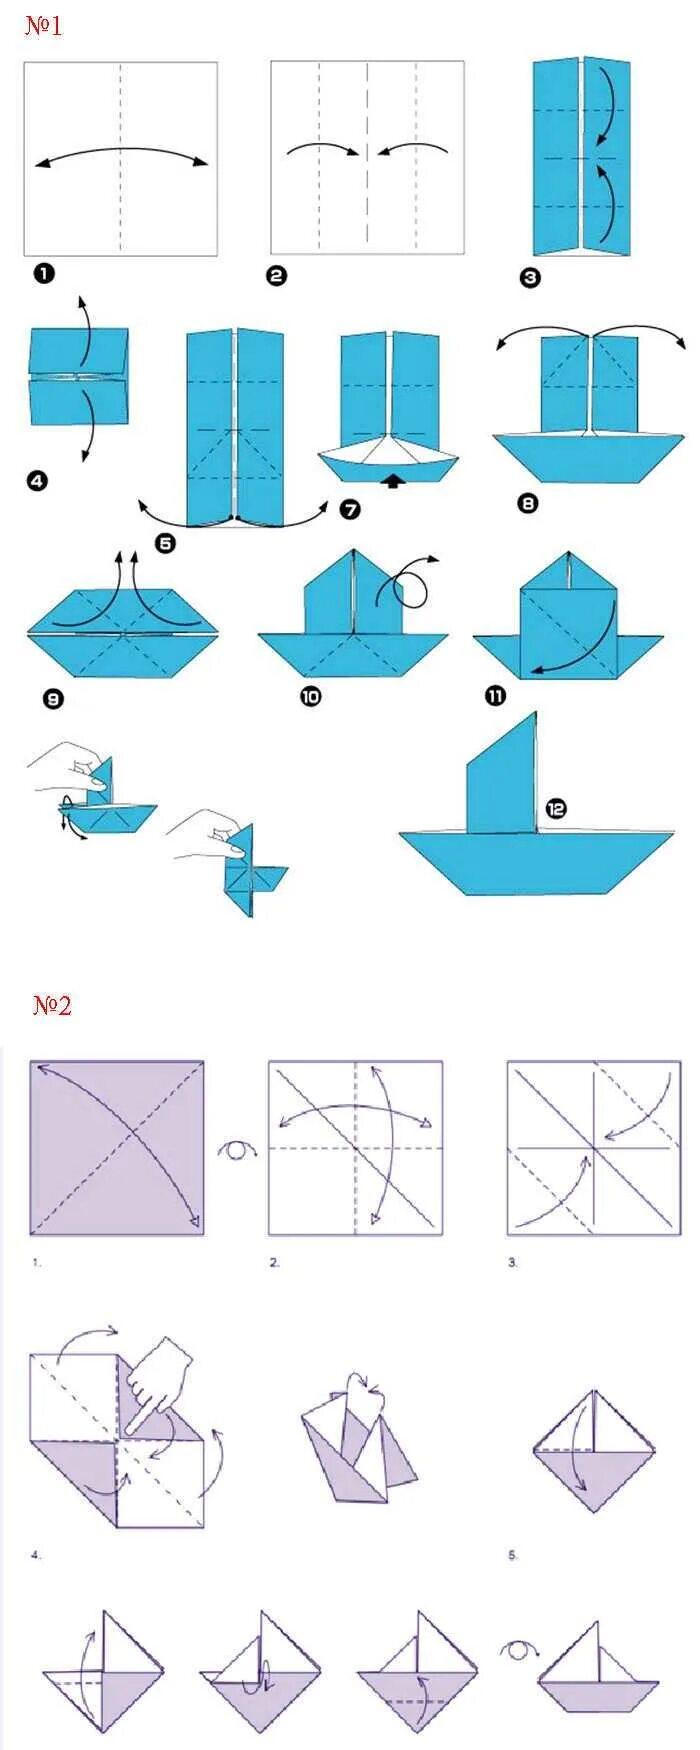 Оригами из бумаги для детей кораблик пошагово. Оригами из бумаги схемы для начинающих кораблик. Как сделать кораблик из бумаги пошаговая инструкция. Как делается кораблик из бумаги а4. Оригами из бумаги кораблик схема поэтапно для детей.